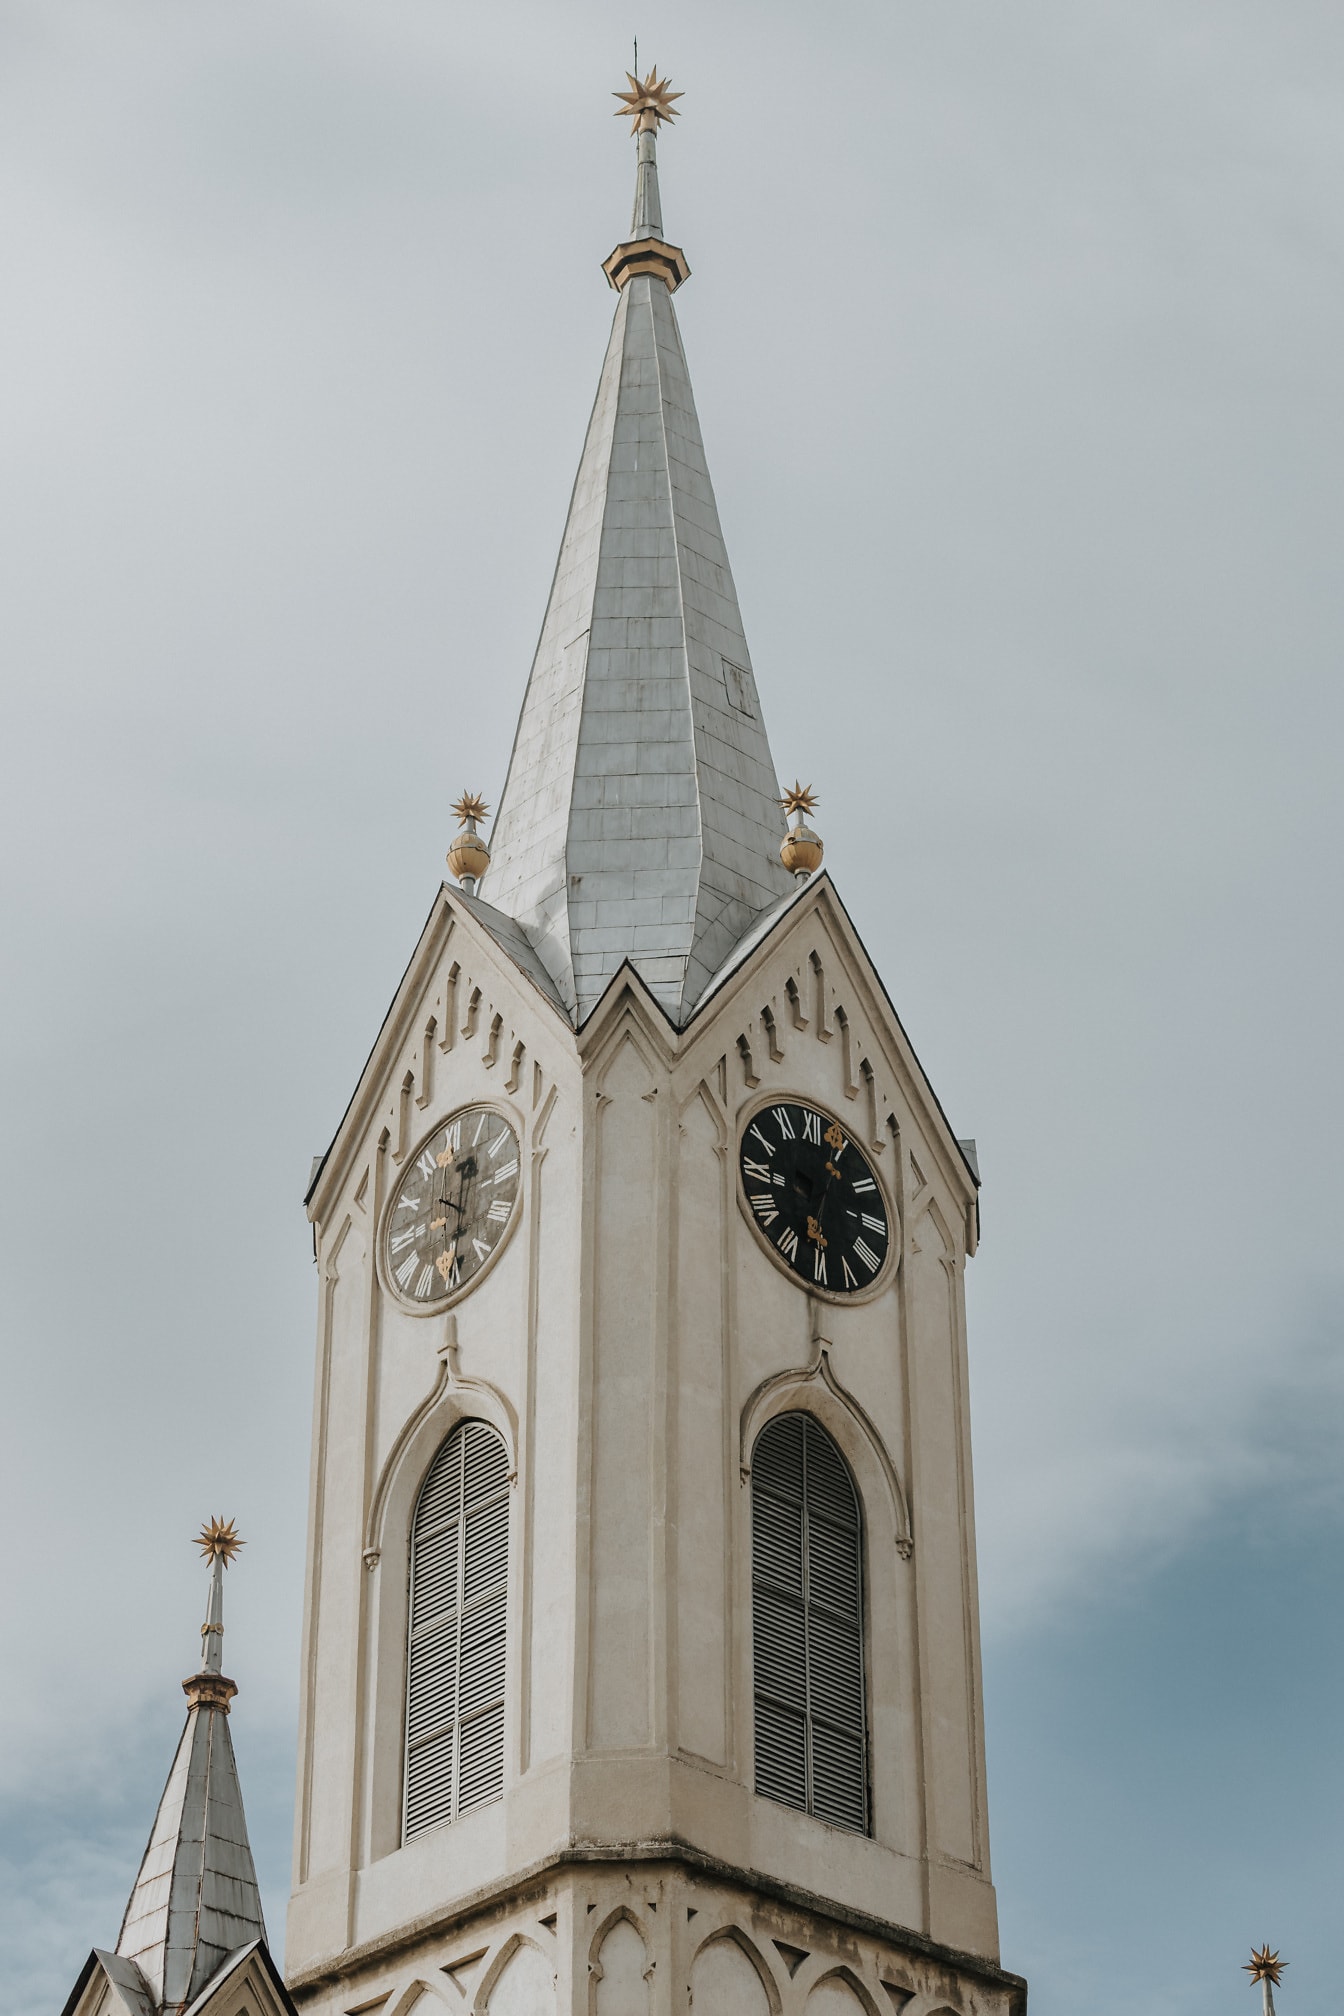 Reformchristlicher Kirchturm mit Analoguhr